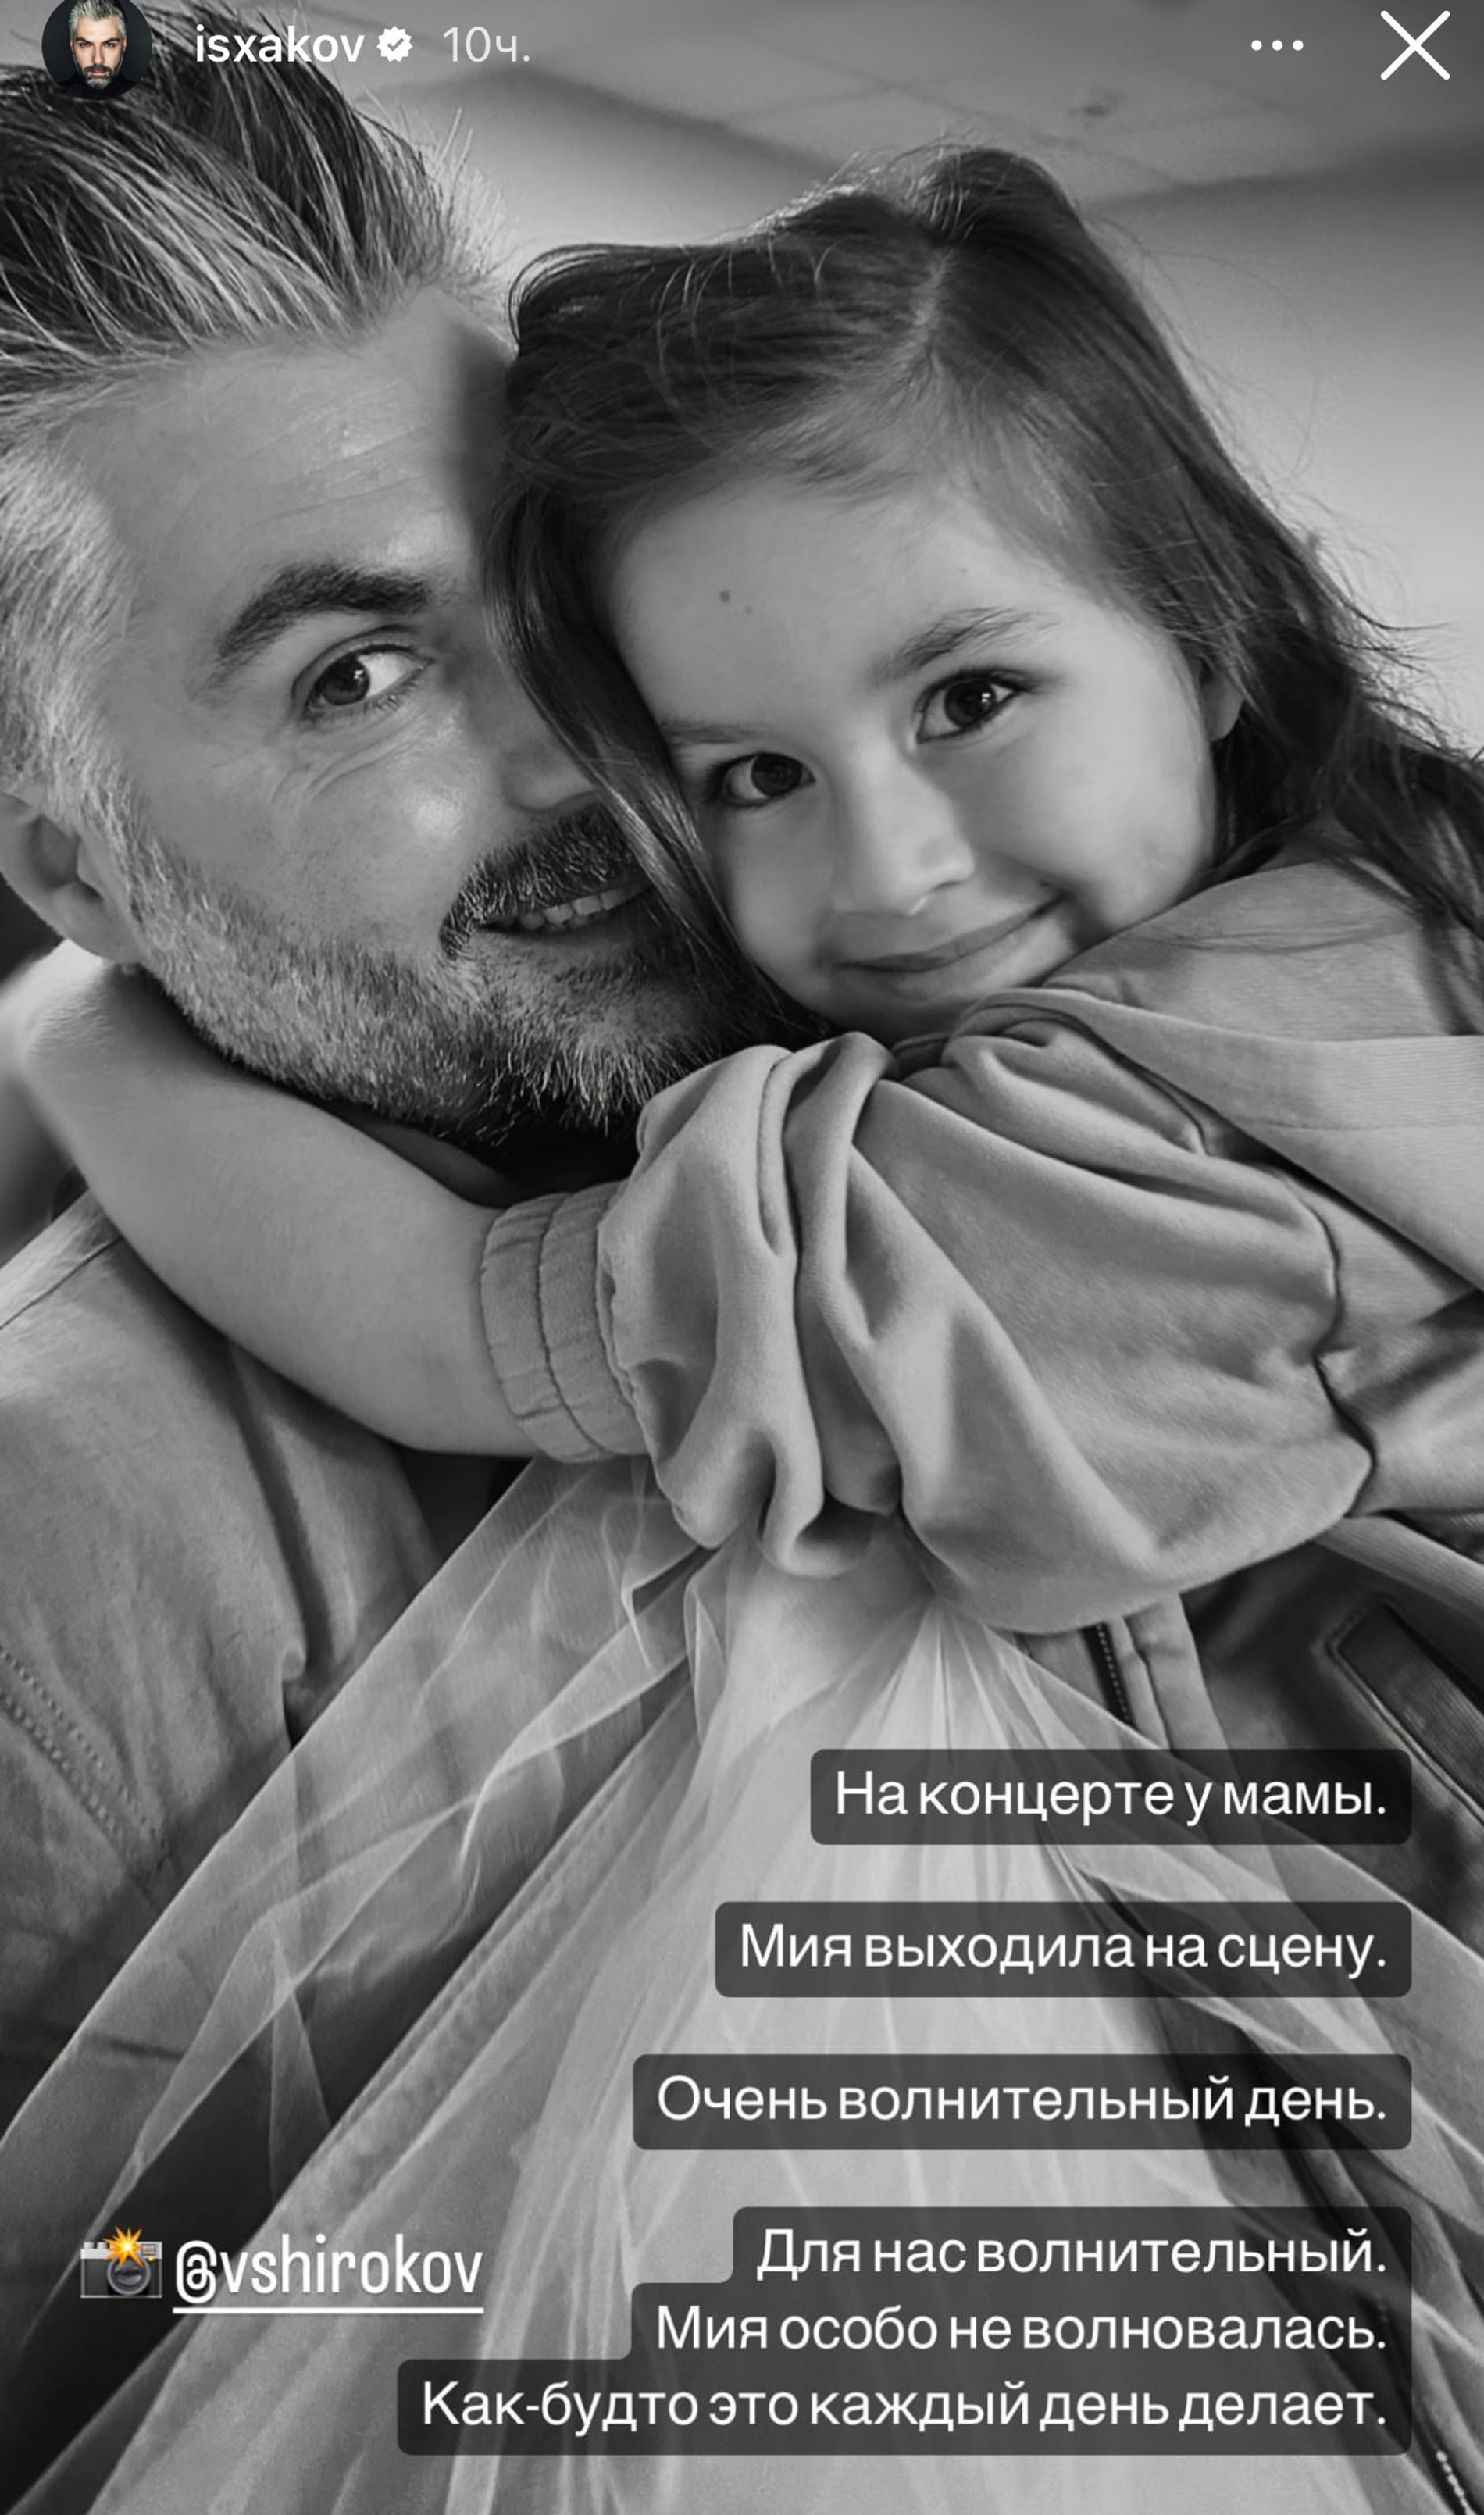 Полина Гагарина впервые представила дочь публике: трогательные кадры